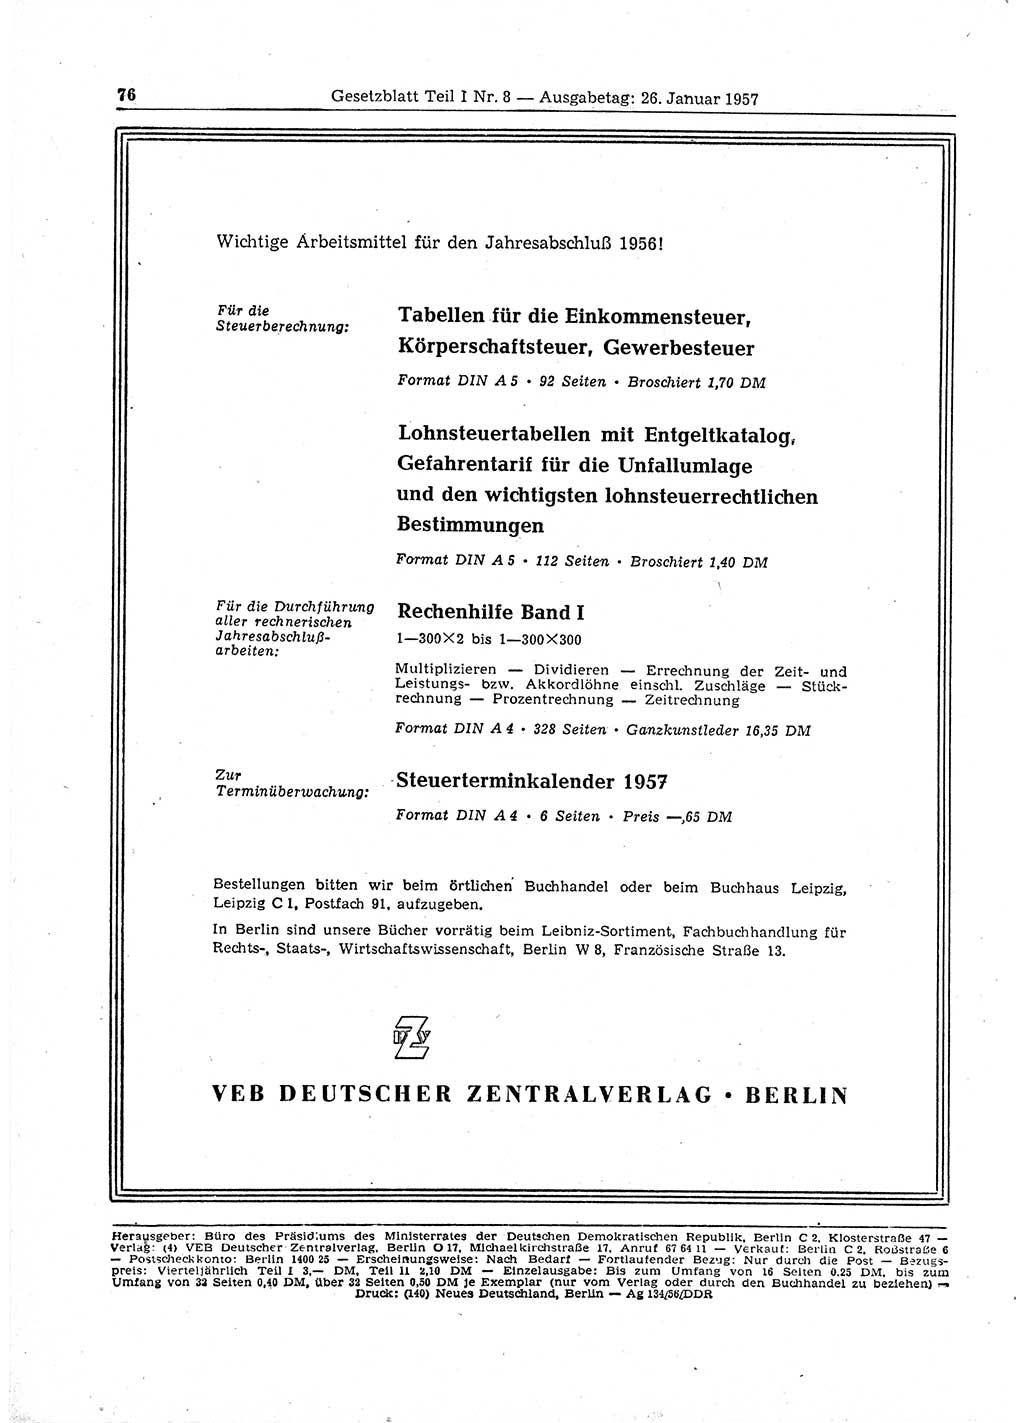 Gesetzblatt (GBl.) der Deutschen Demokratischen Republik (DDR) Teil Ⅰ 1957, Seite 76 (GBl. DDR Ⅰ 1957, S. 76)